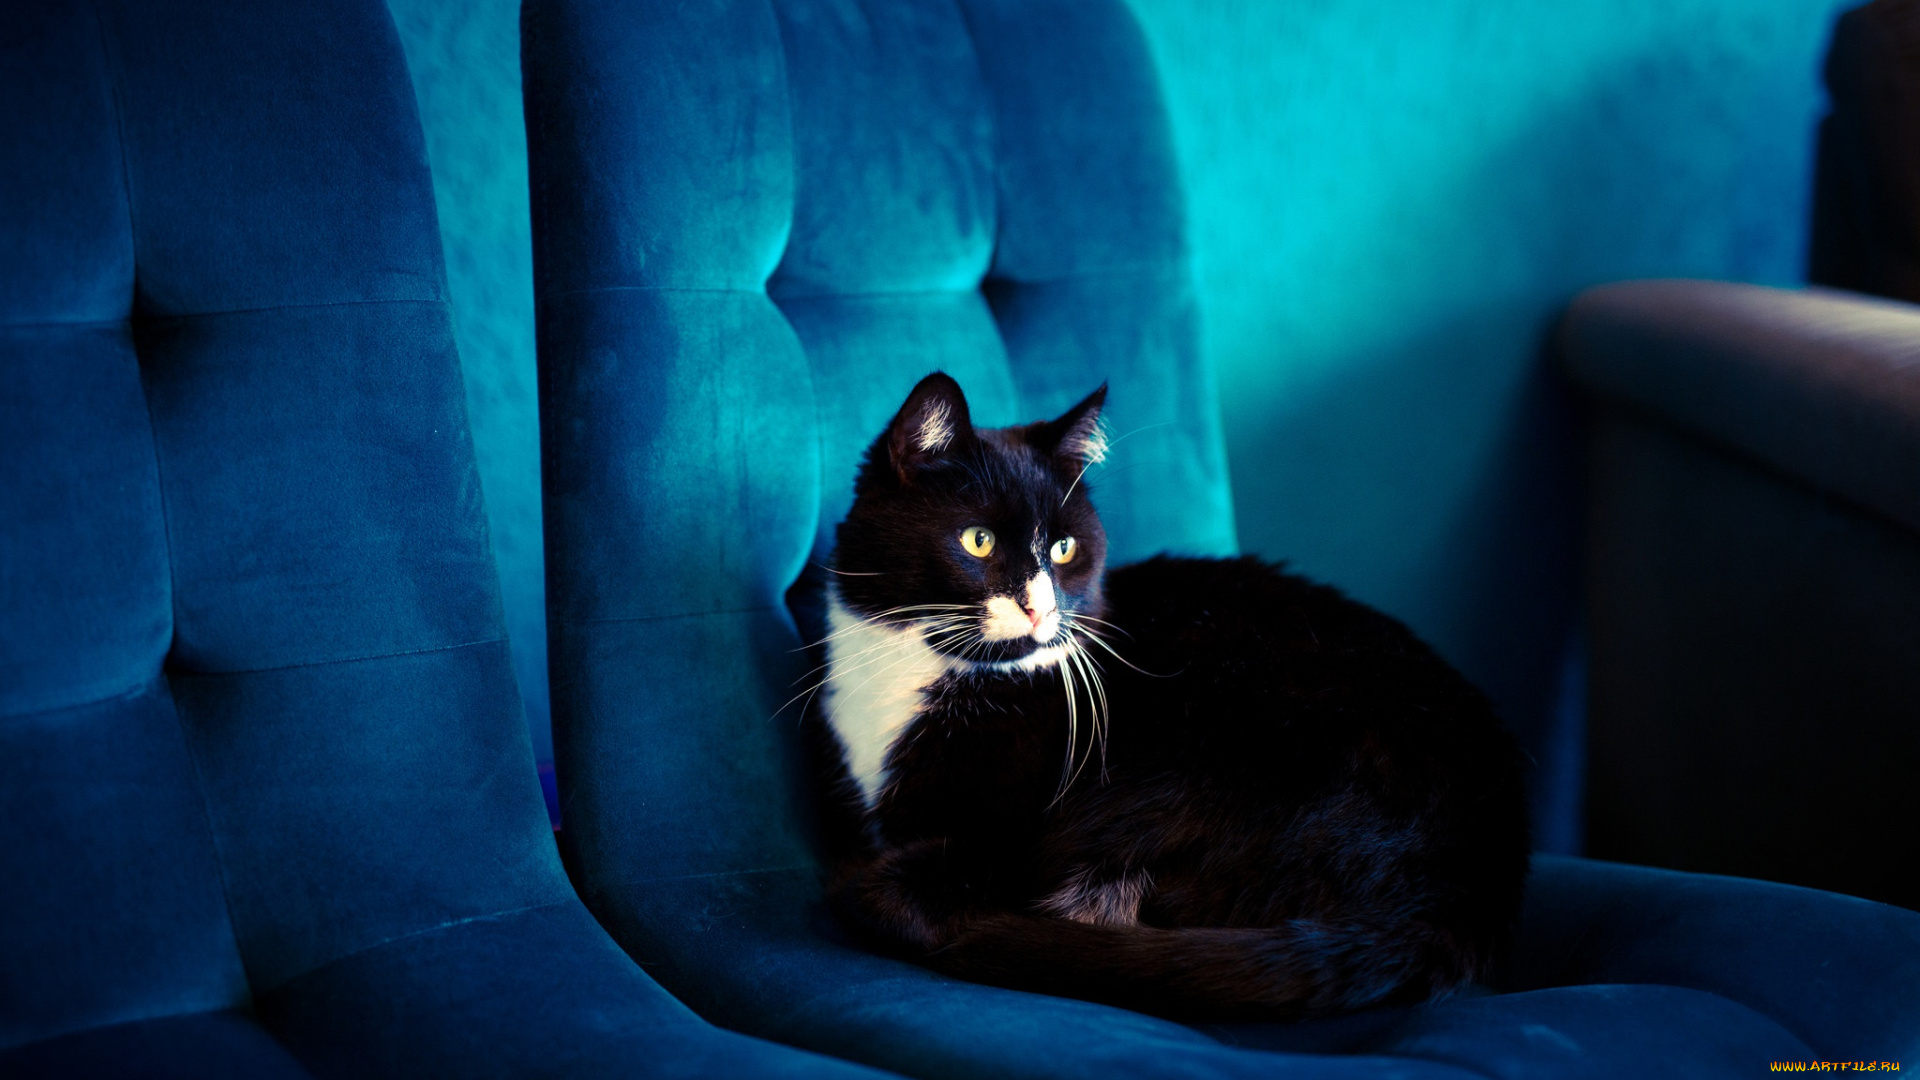 животные, коты, кот, синий, кресло, помещение, черный, голубой, обивка, фон, лежит, кошка, взгляд, комната